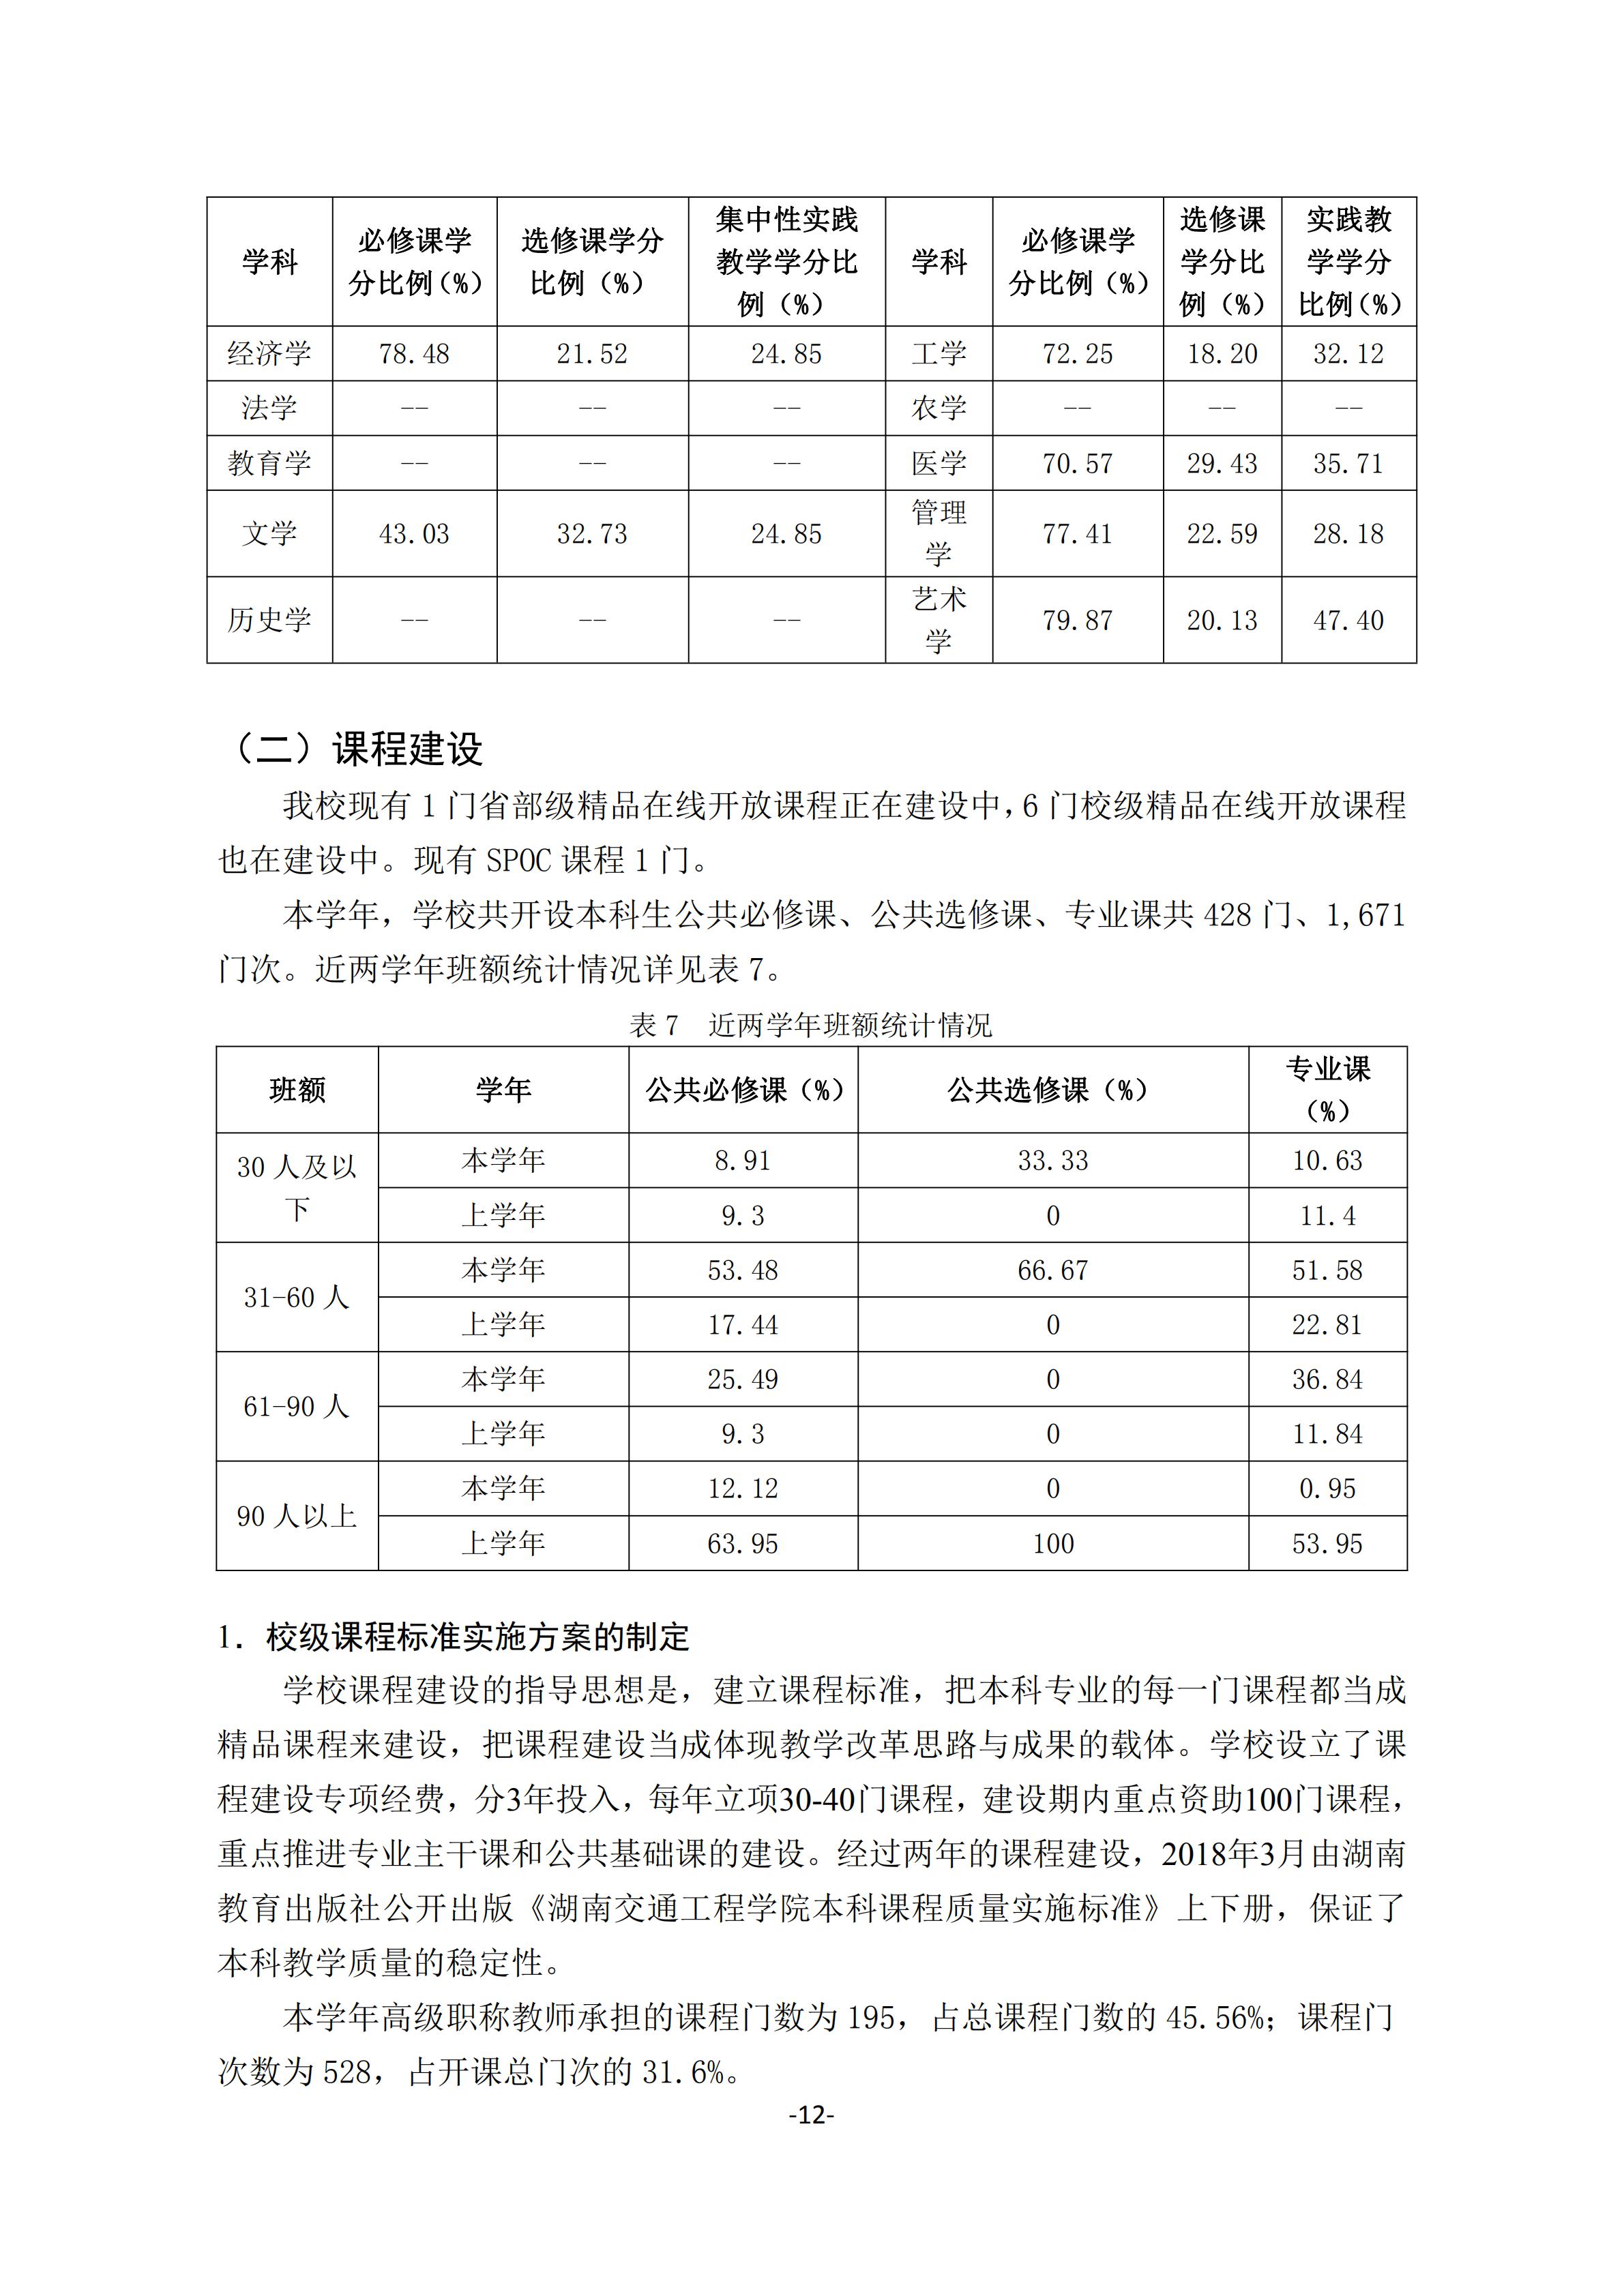 1.湖南交通工程学院2018-2019学年本科教学质量报告_11.jpg